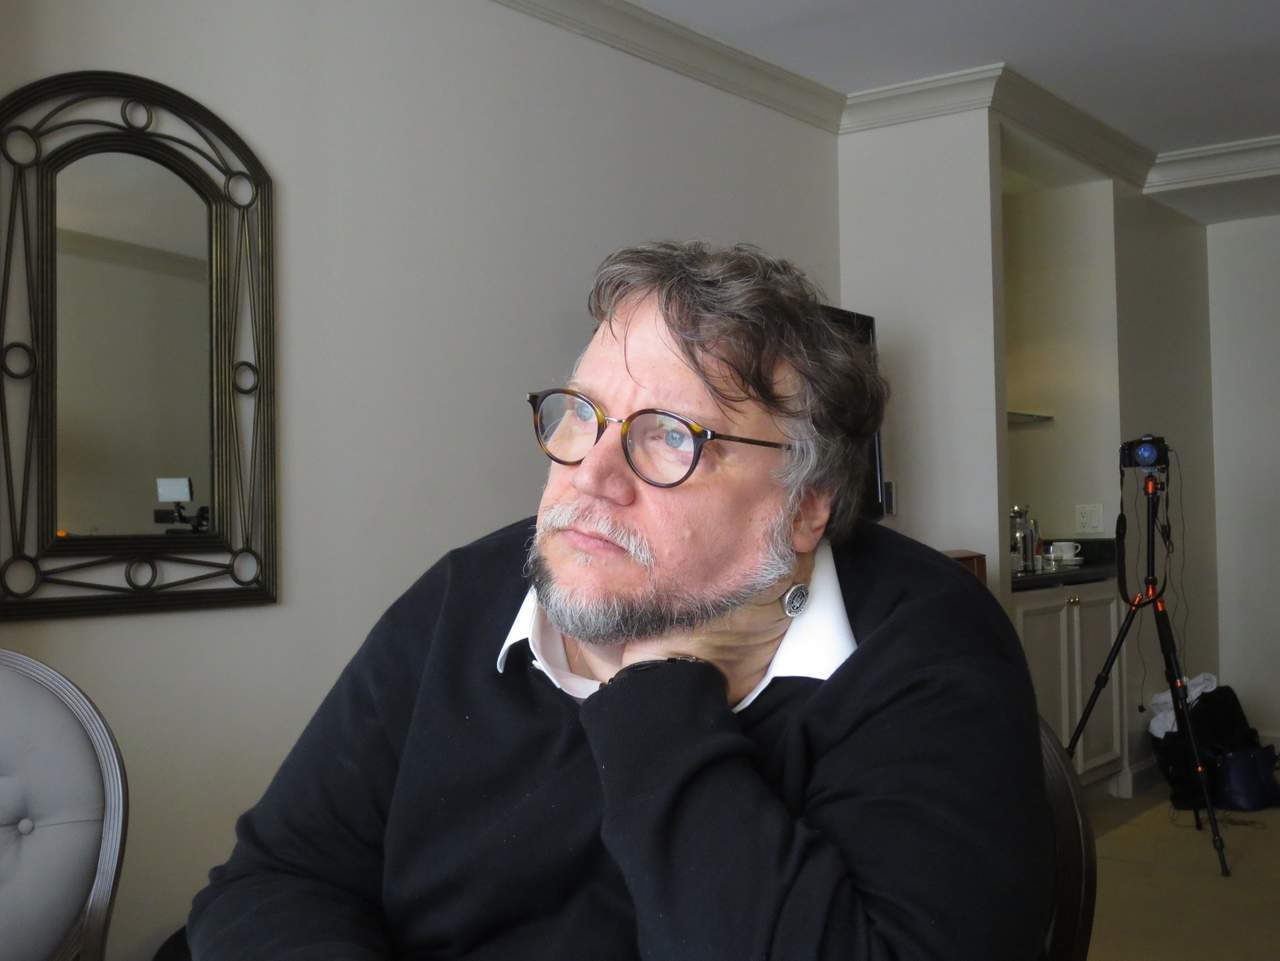 'Estamos viviendo un momento de descomposición social desde hace mucho tiempo, pero sigue aumentando', afirma Del Toro. (ARCHIVO)